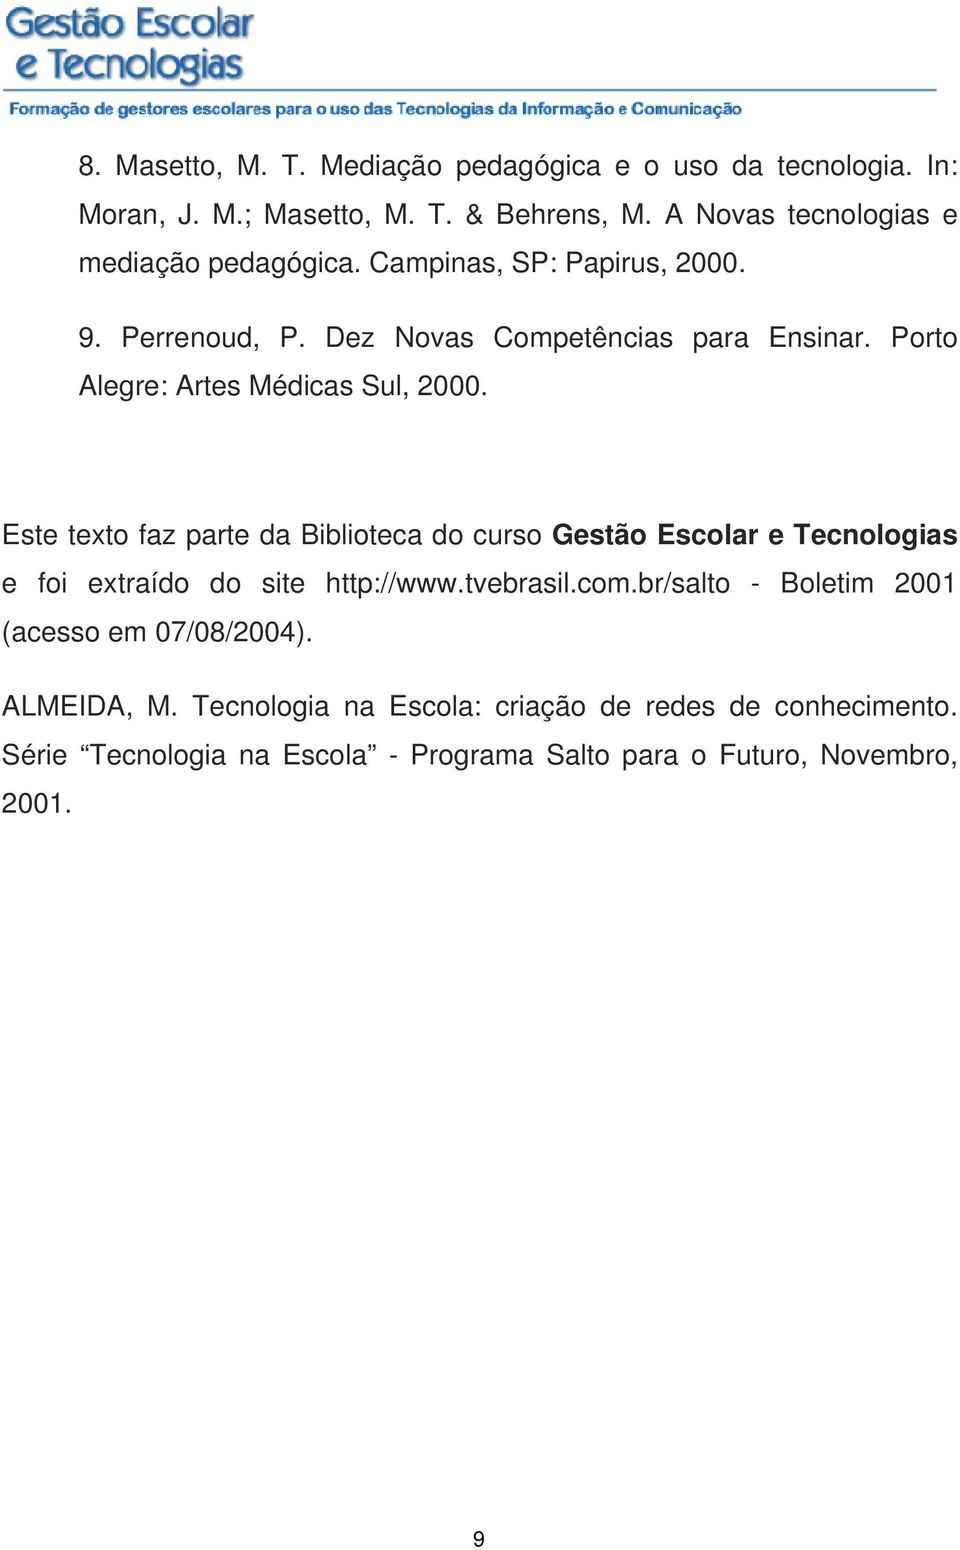 Porto Alegre: Artes Médicas Sul, 2000. Este texto faz parte da Biblioteca do curso Gestão Escolar e Tecnologias e foi extraído do site http://www.